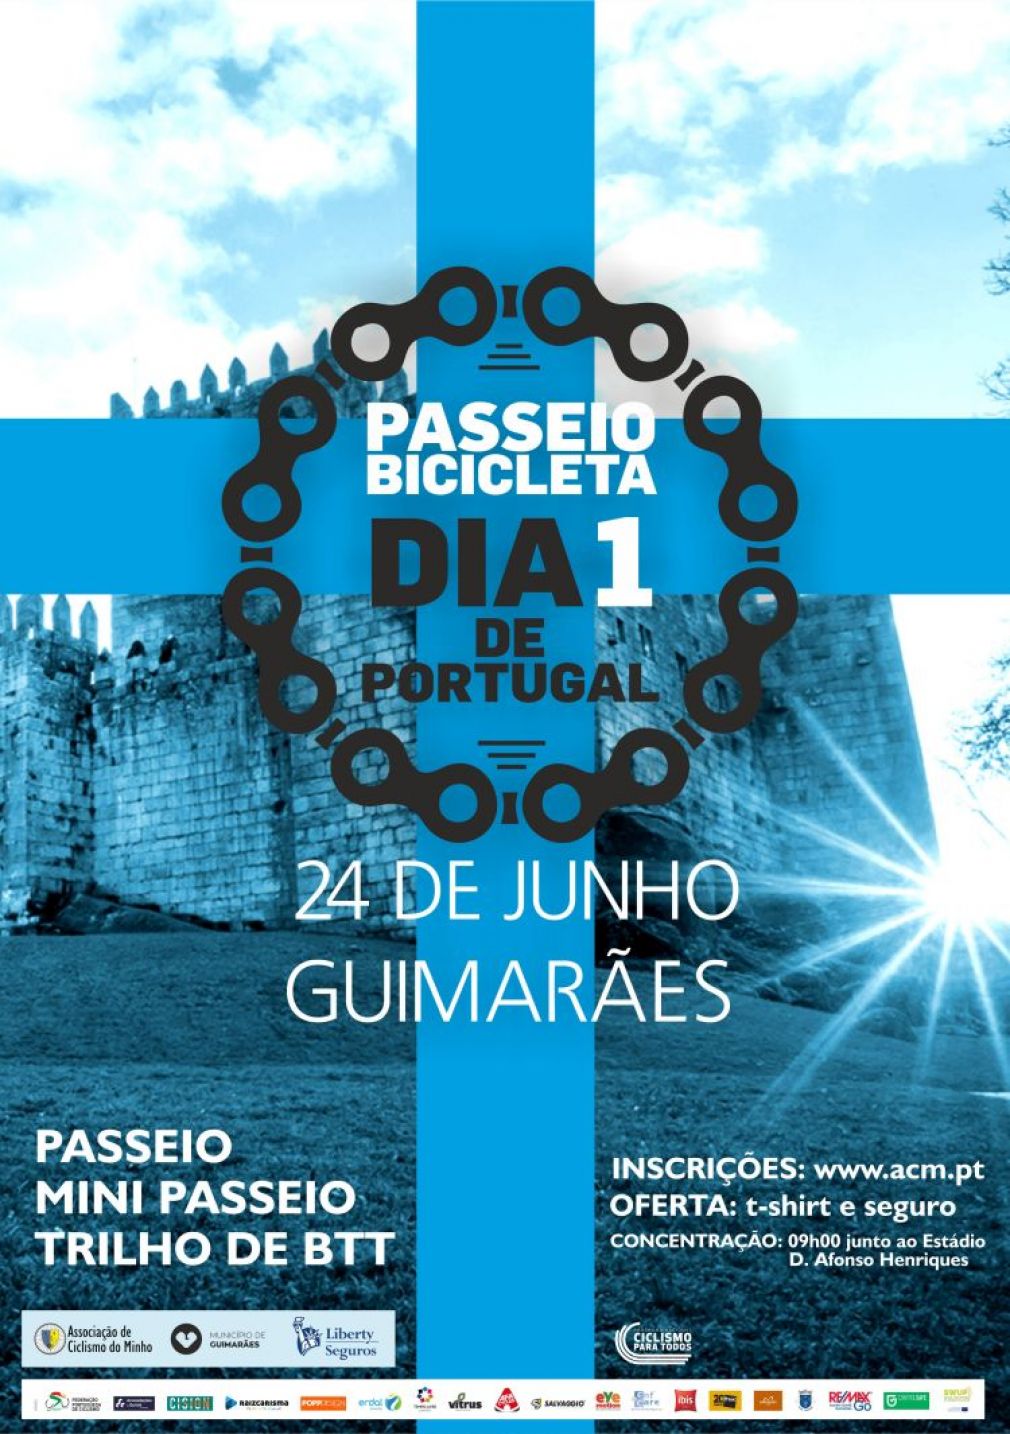 Passeio de Bicicleta Dia 1 de Portugal (Guimarães, 24 de junho)